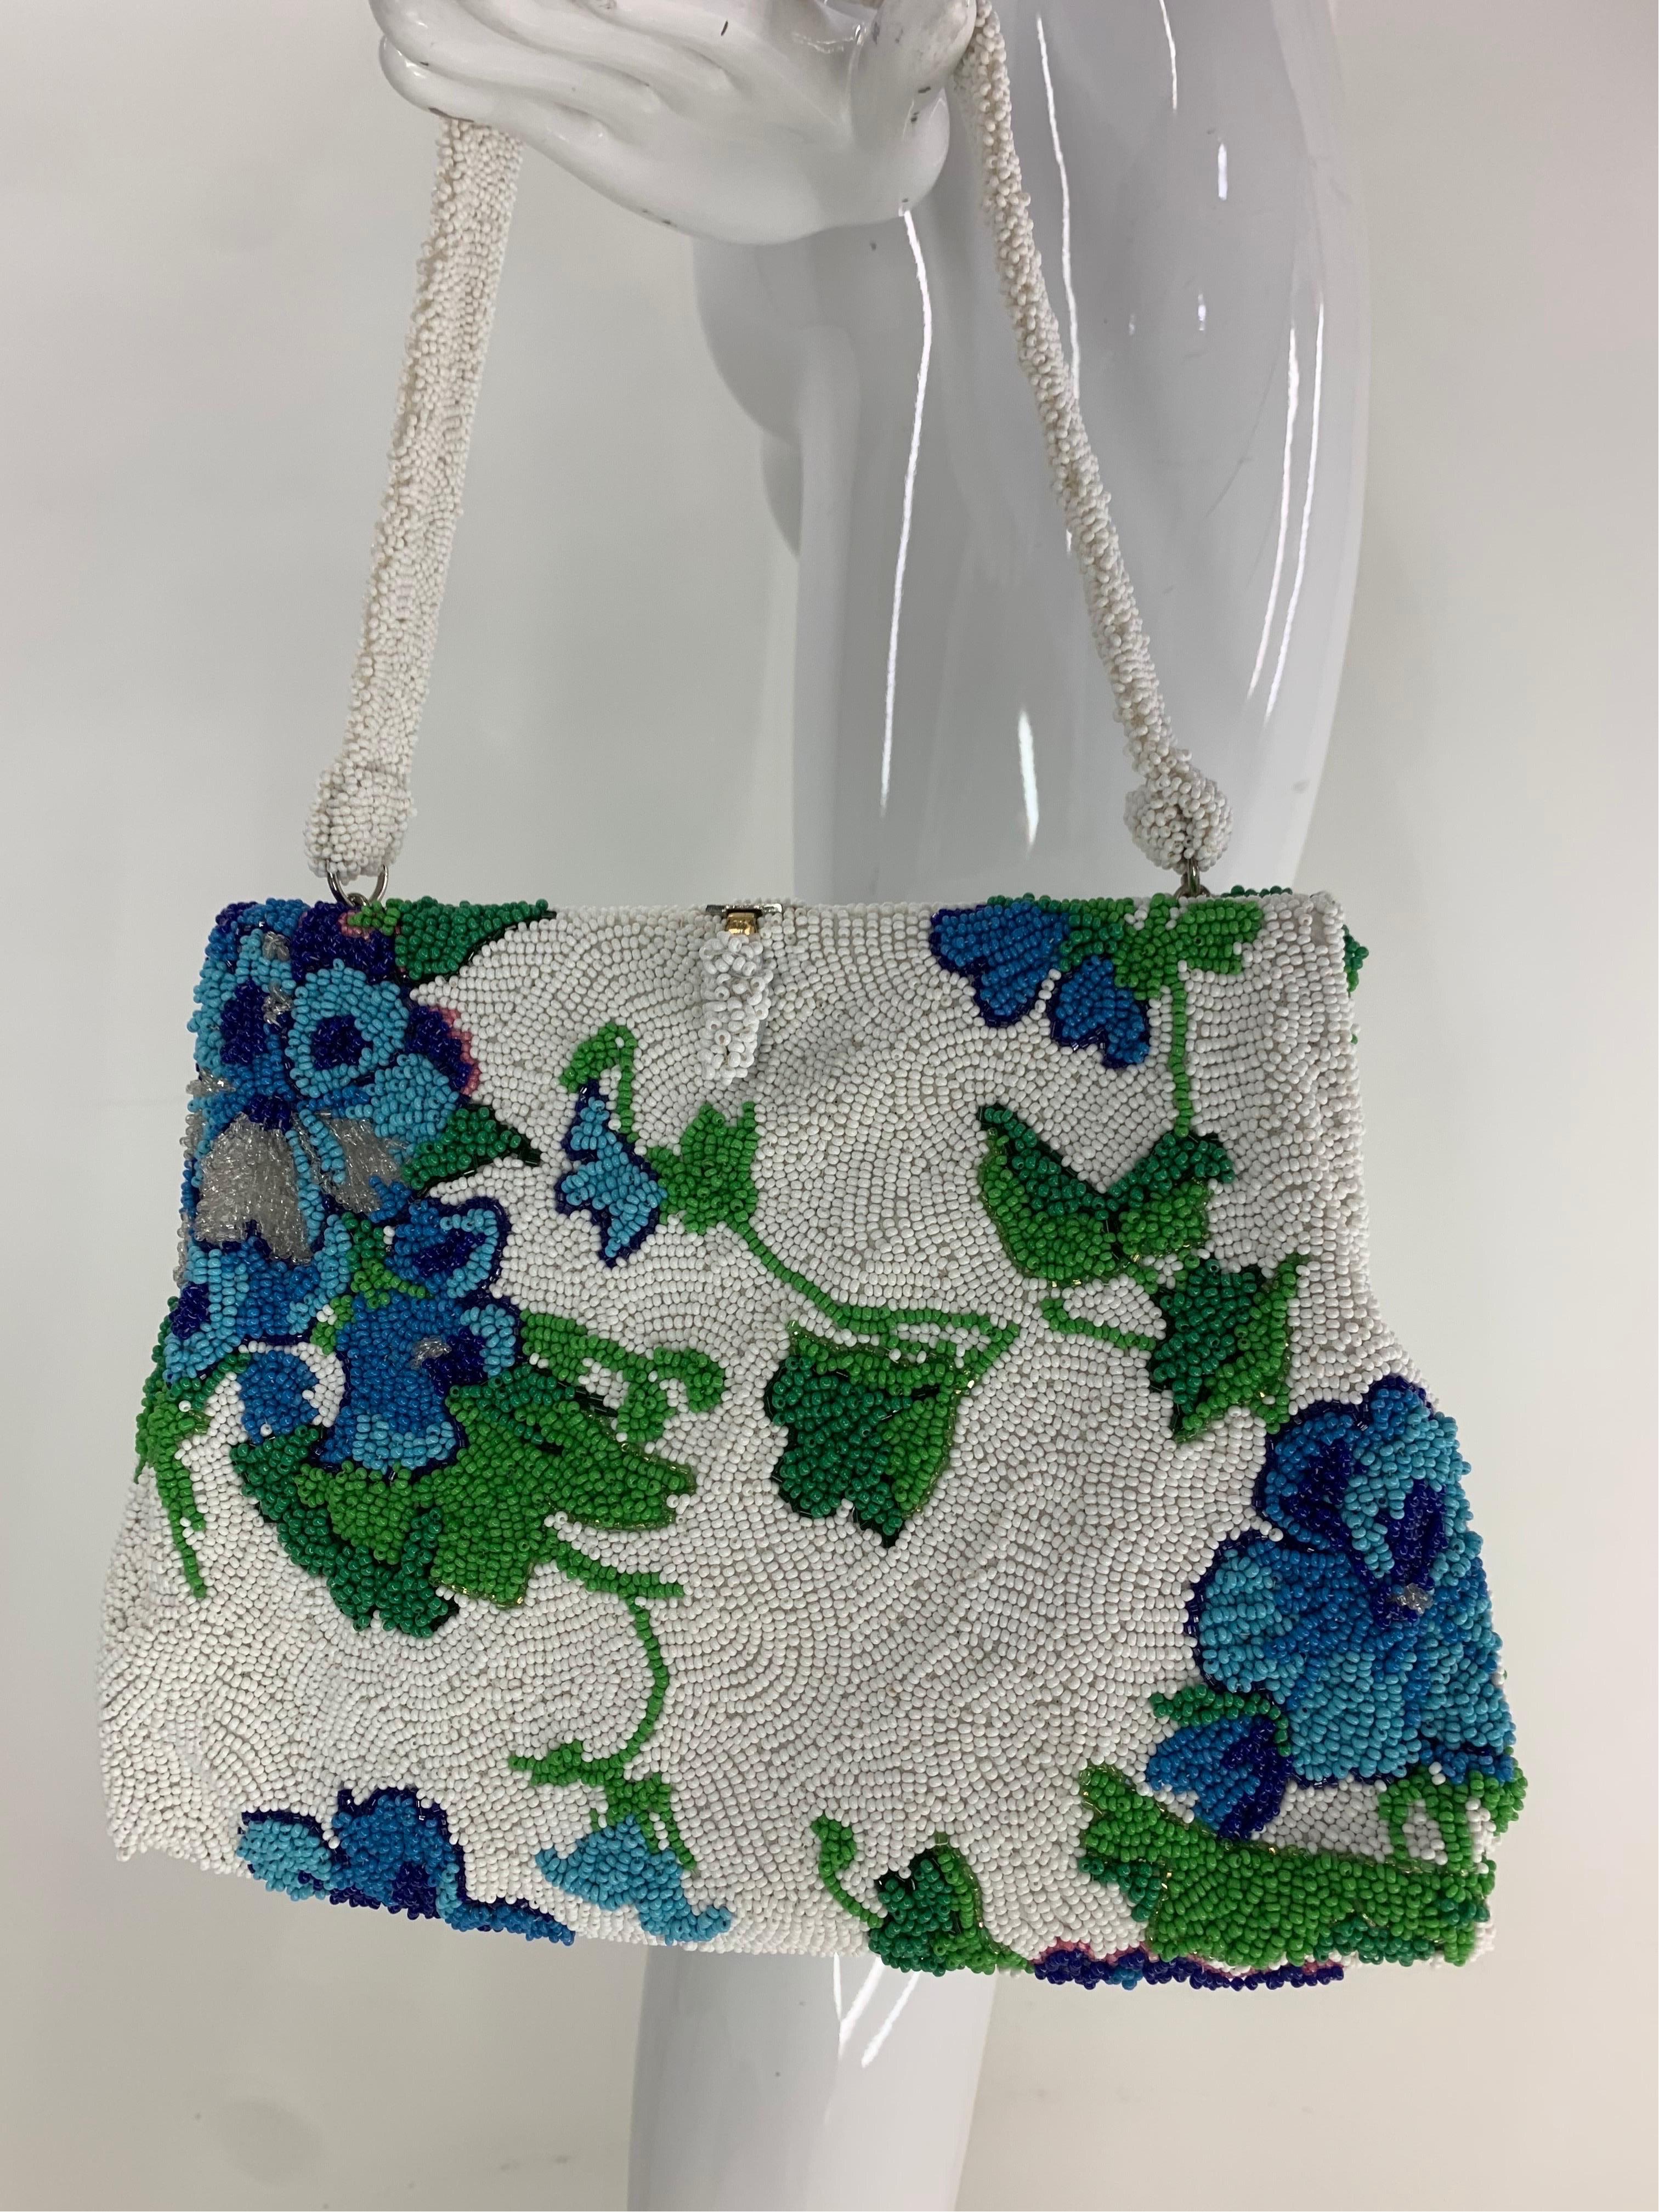 1950 Koret Tresor Stunning Floral Beaded Handbag en vert et bleu sur fond blanc. Absolument charmant et un sac à main de taille très fonctionnelle par l'un des fabricants de la plus haute qualité de la période. 